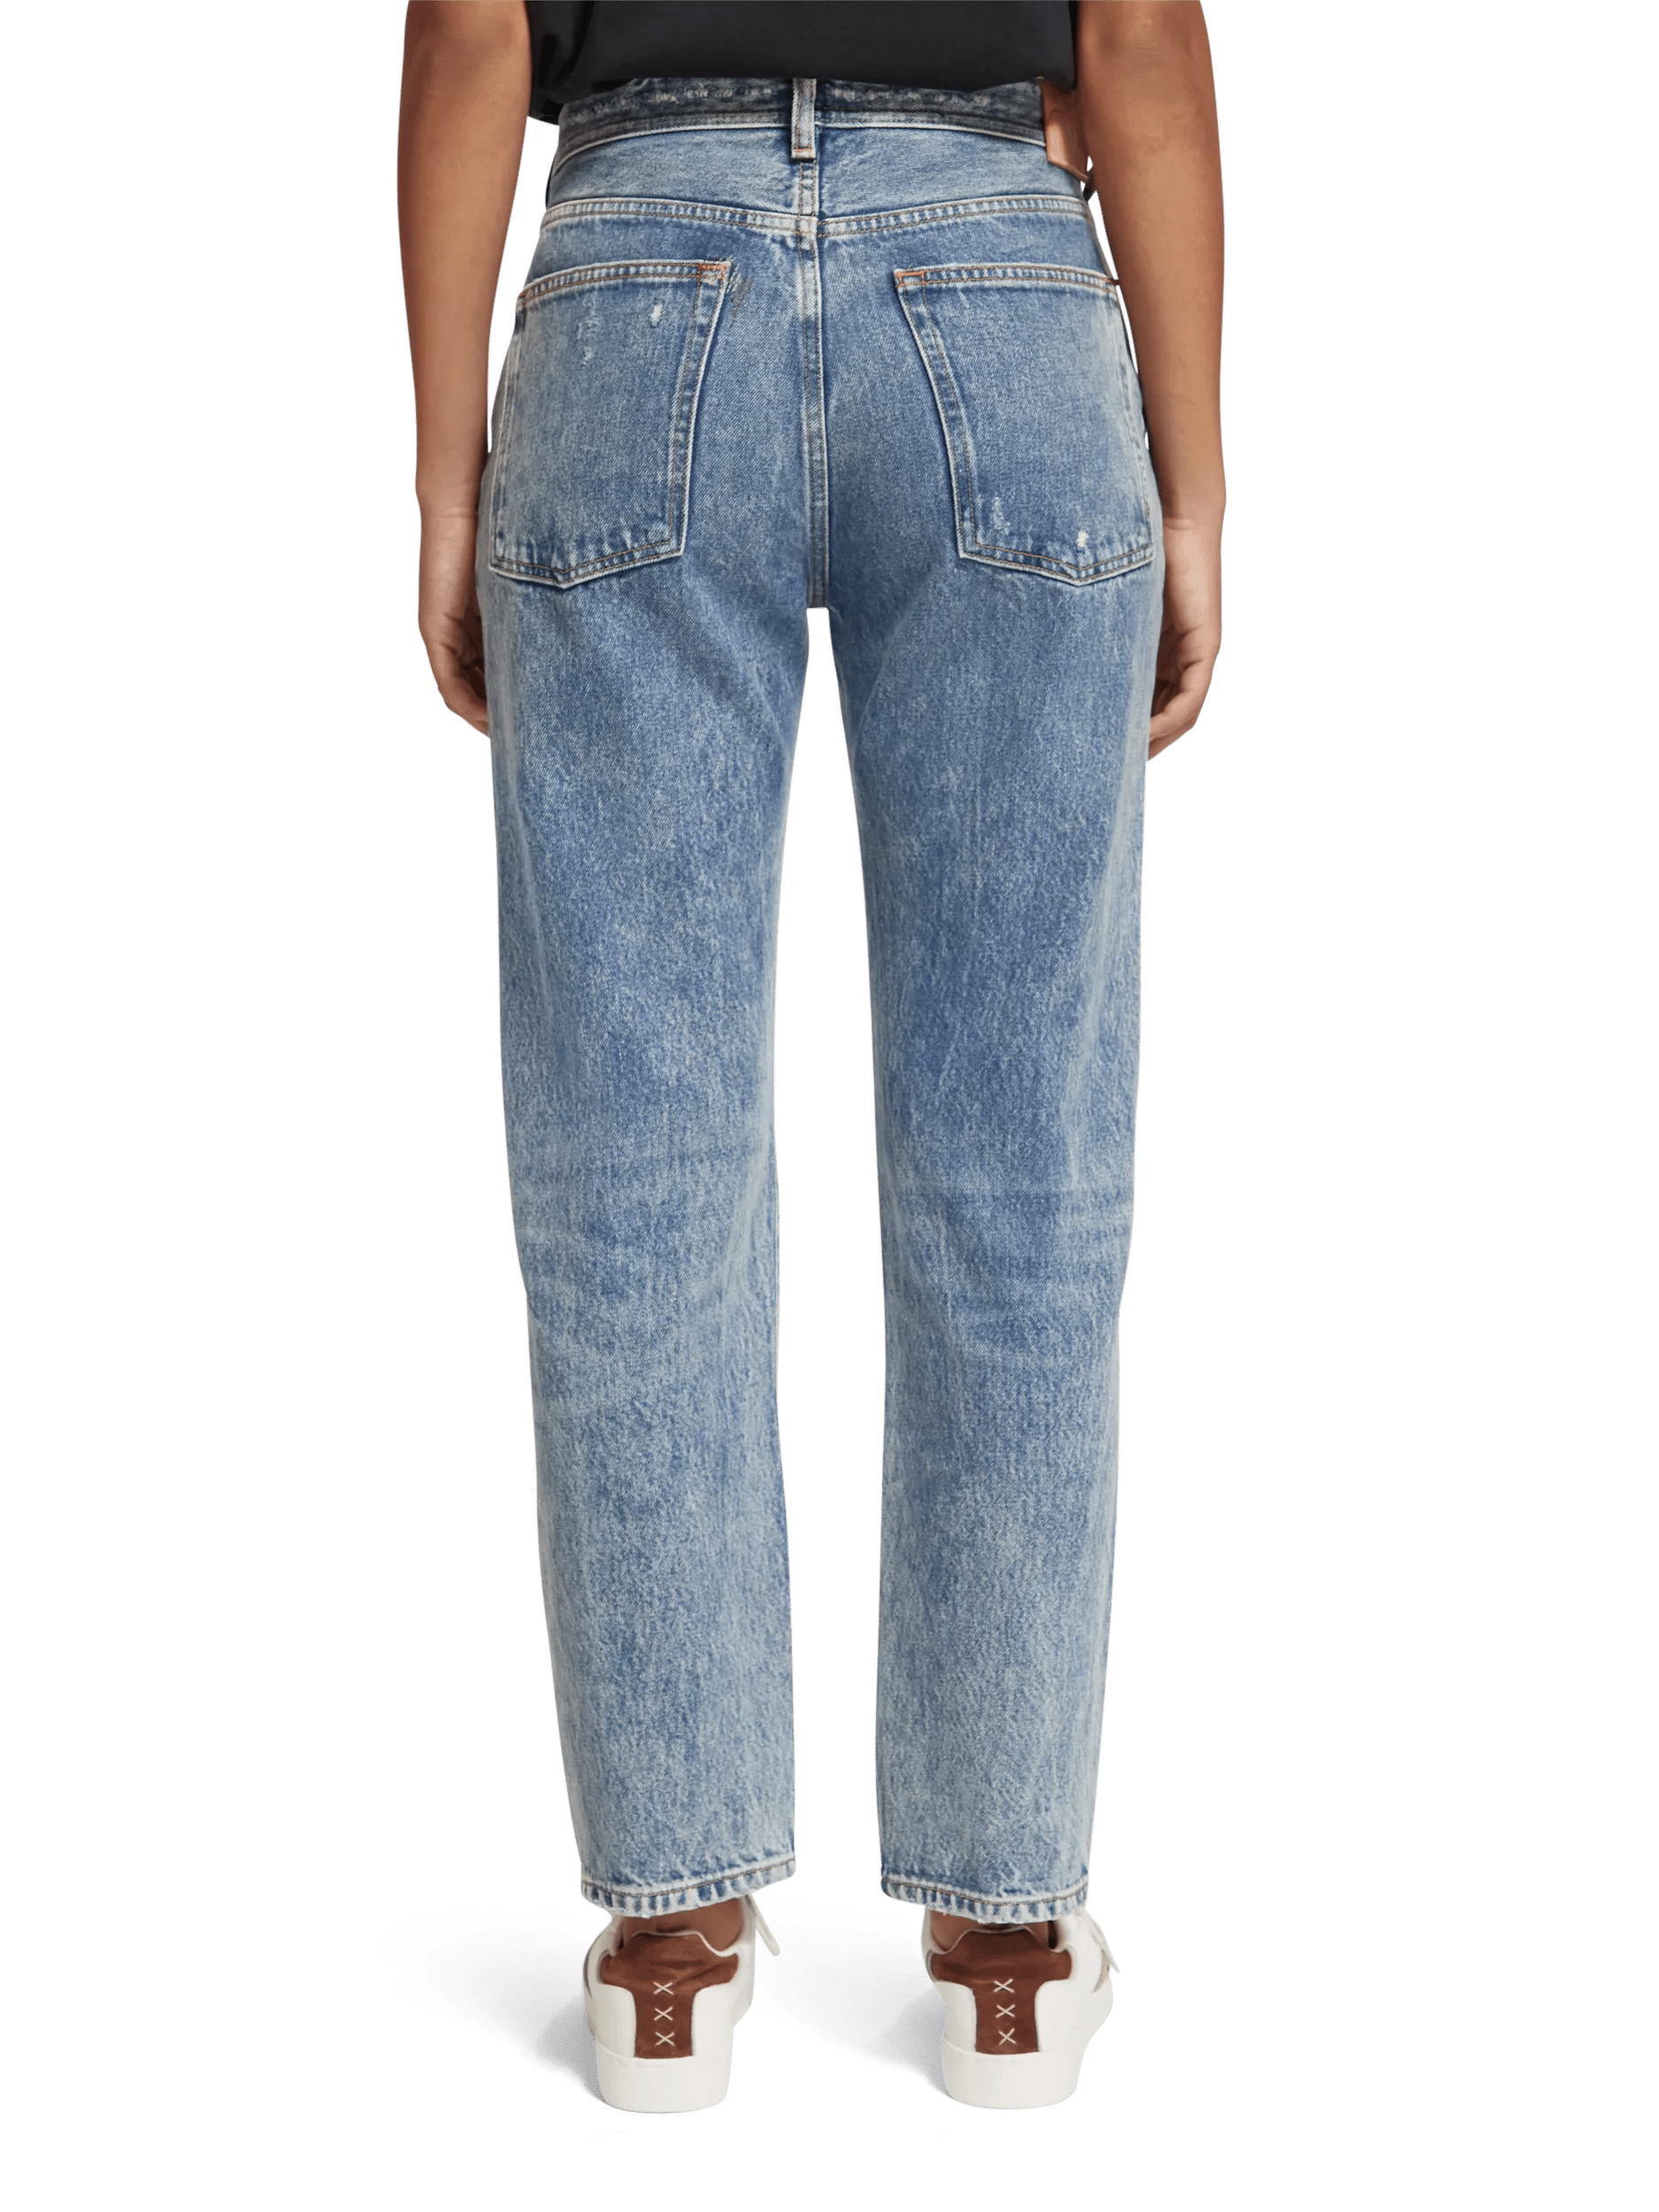 Scotch & Soda De Buzz mid-rise boyfriend fit jeans FIT-BCK